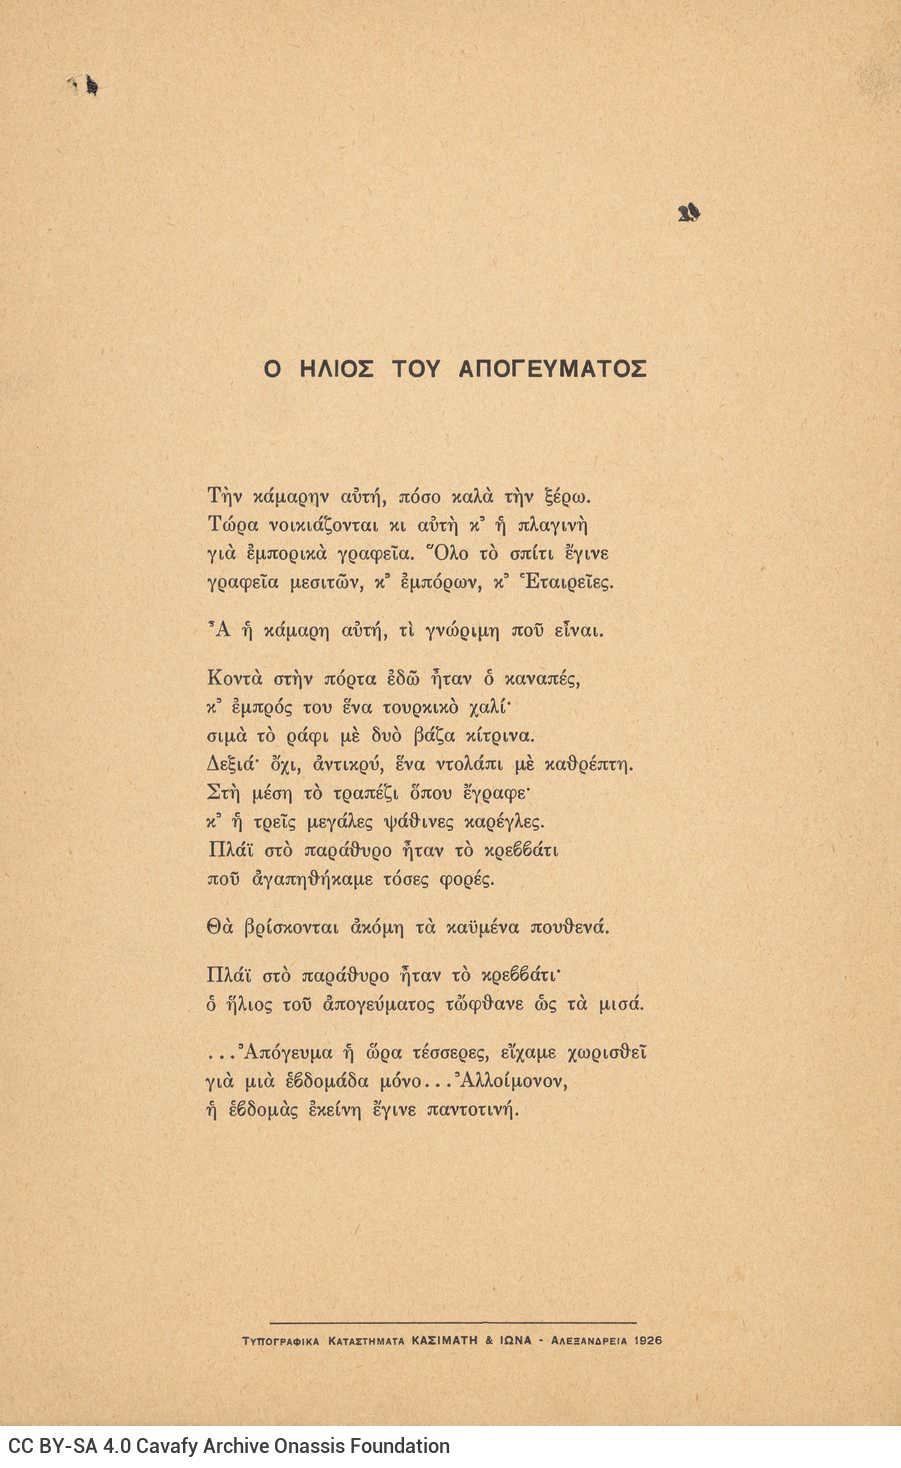 Ποιητική συλλογή του Καβάφη με 46 ποιήματα της περιόδου 1919-1926, χωρίς ε